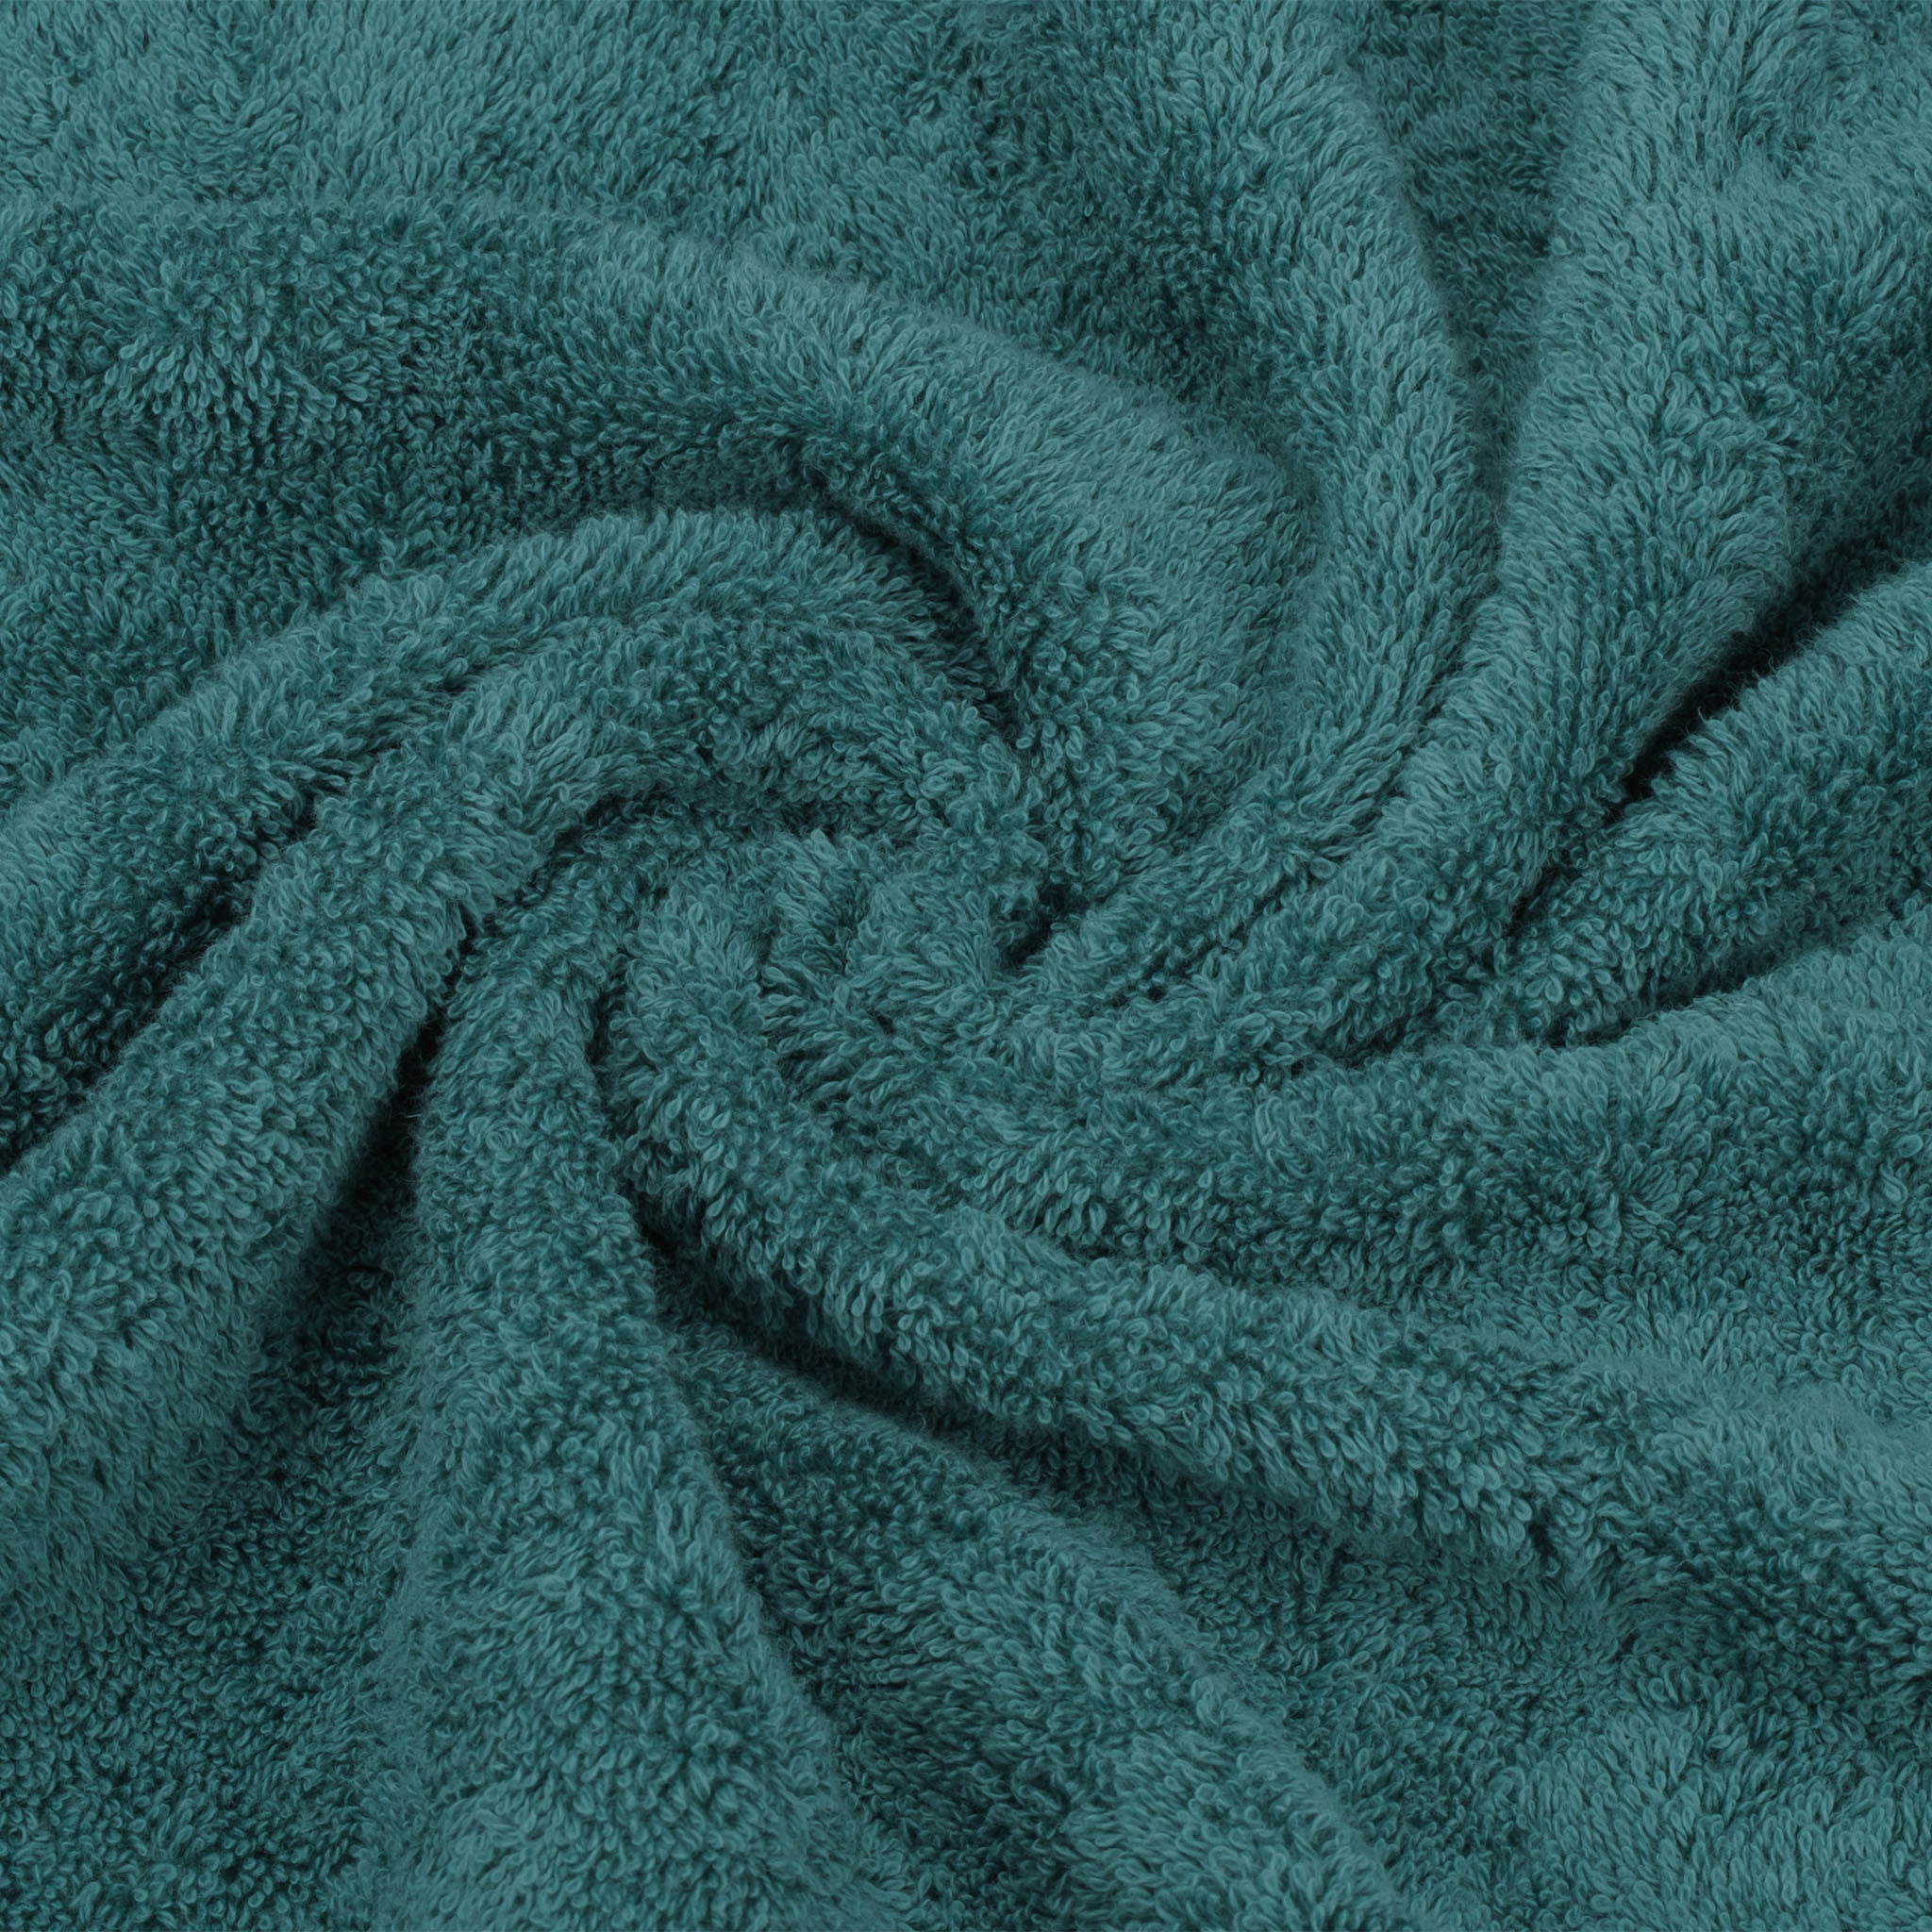 American Soft Linen 100% Turkish Cotton 6 Piece Towel Set Wholesale colonial-blue-7